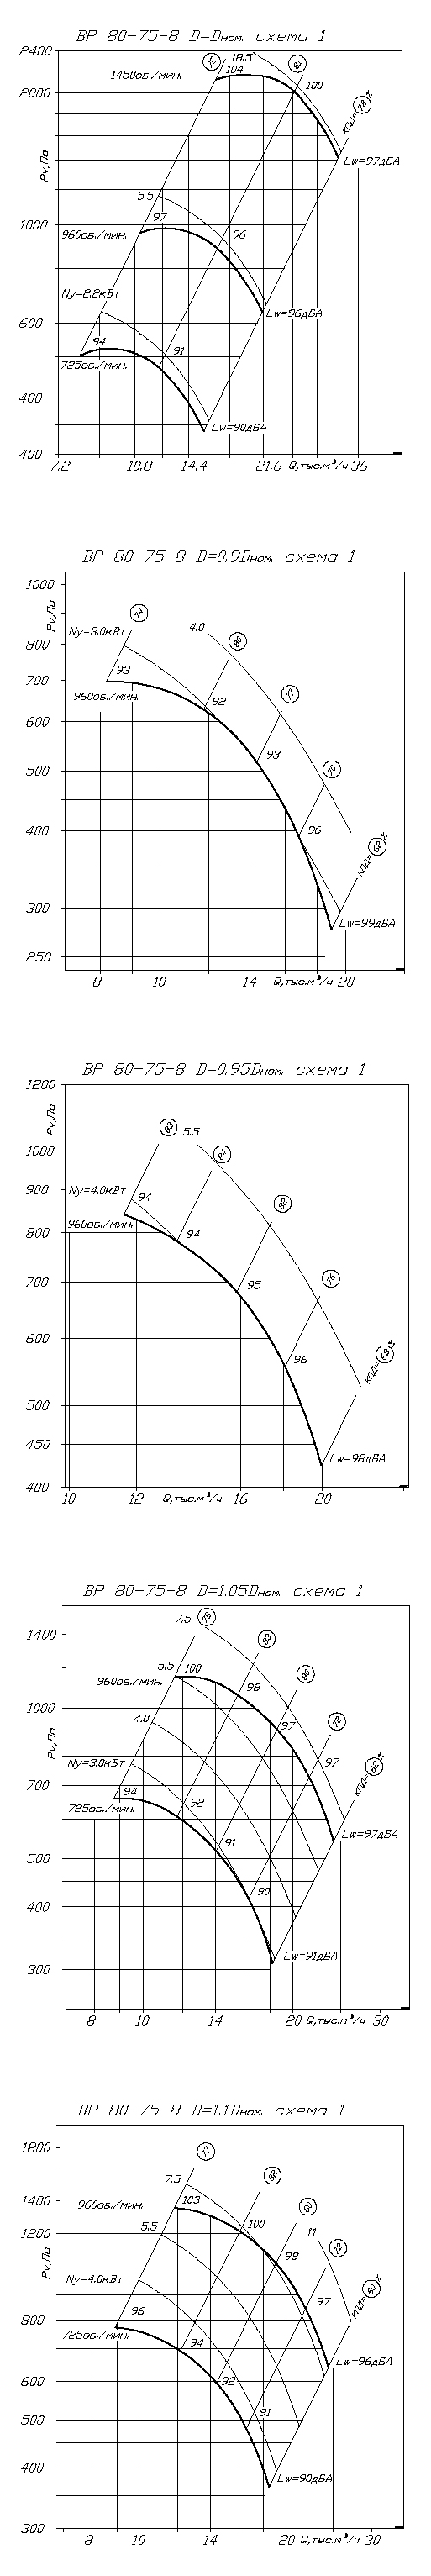 Аэродинамические характеристики вентилятора ВР 80-75 №8